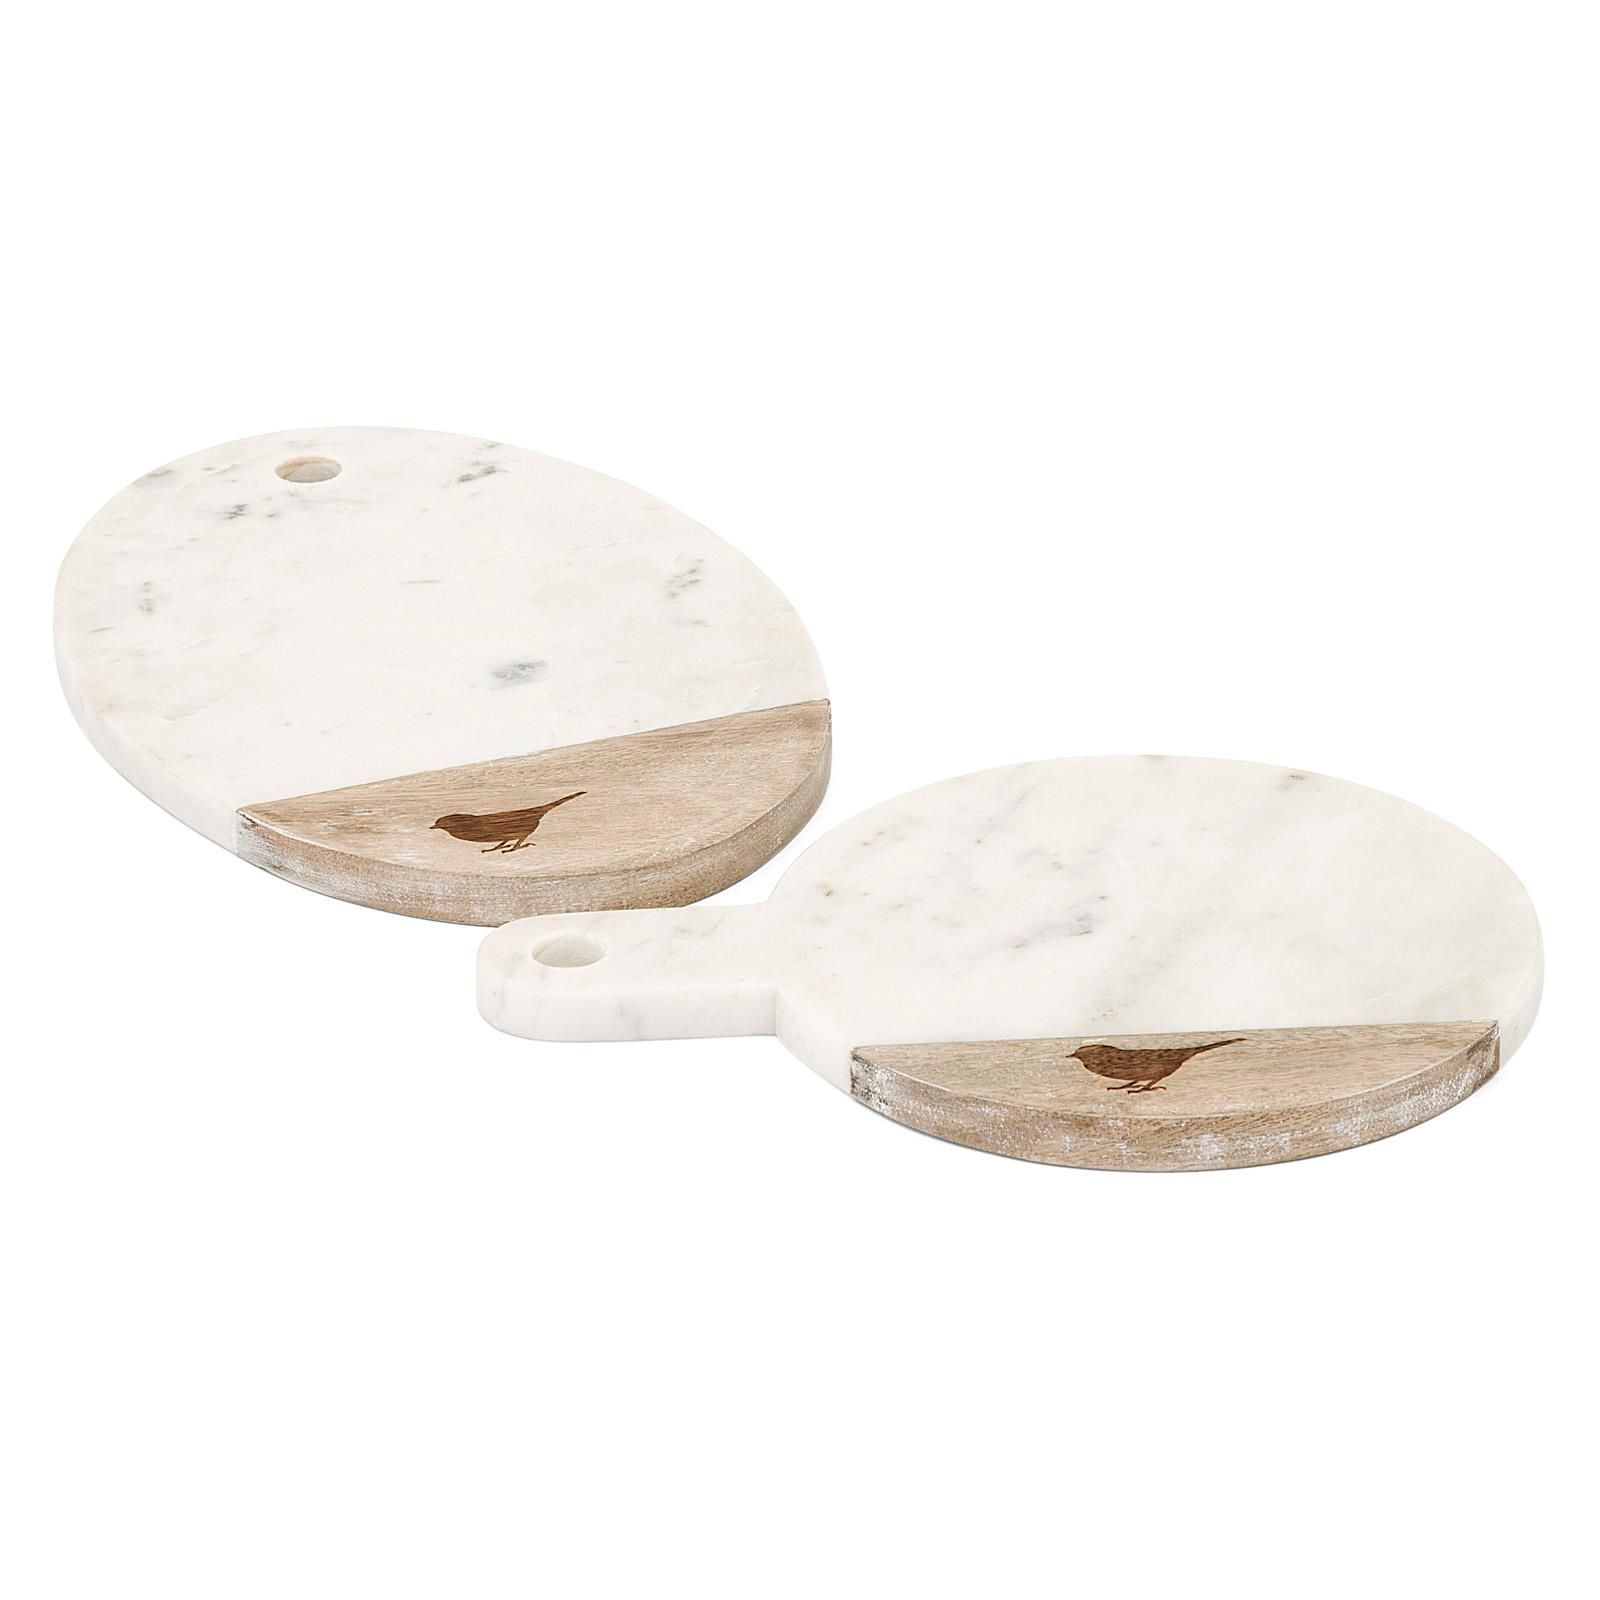 Trisha Yearwood Songbird Marble Cheese Boards | Hayneedle